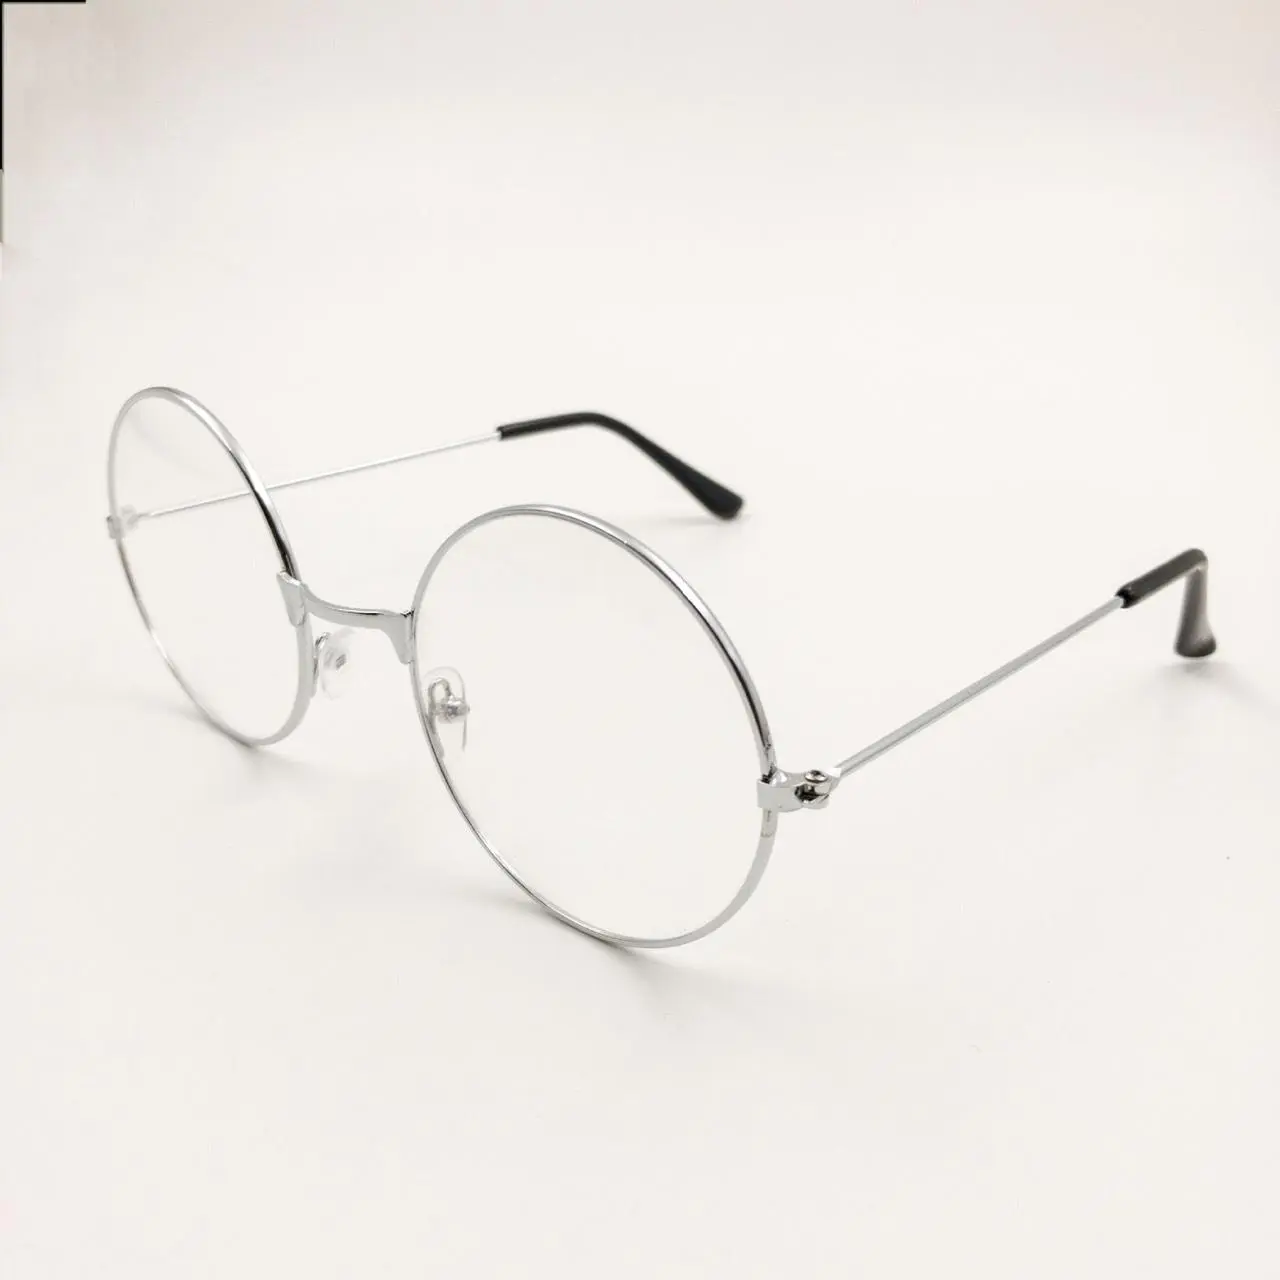 แว่นตากรองแสง กรองแสงบลูไลท์ แว่นตาแฟชั่น Vintage Retro กรอบโลหะ ทรงกลม เลนส์แว่นตา Nerd Geek